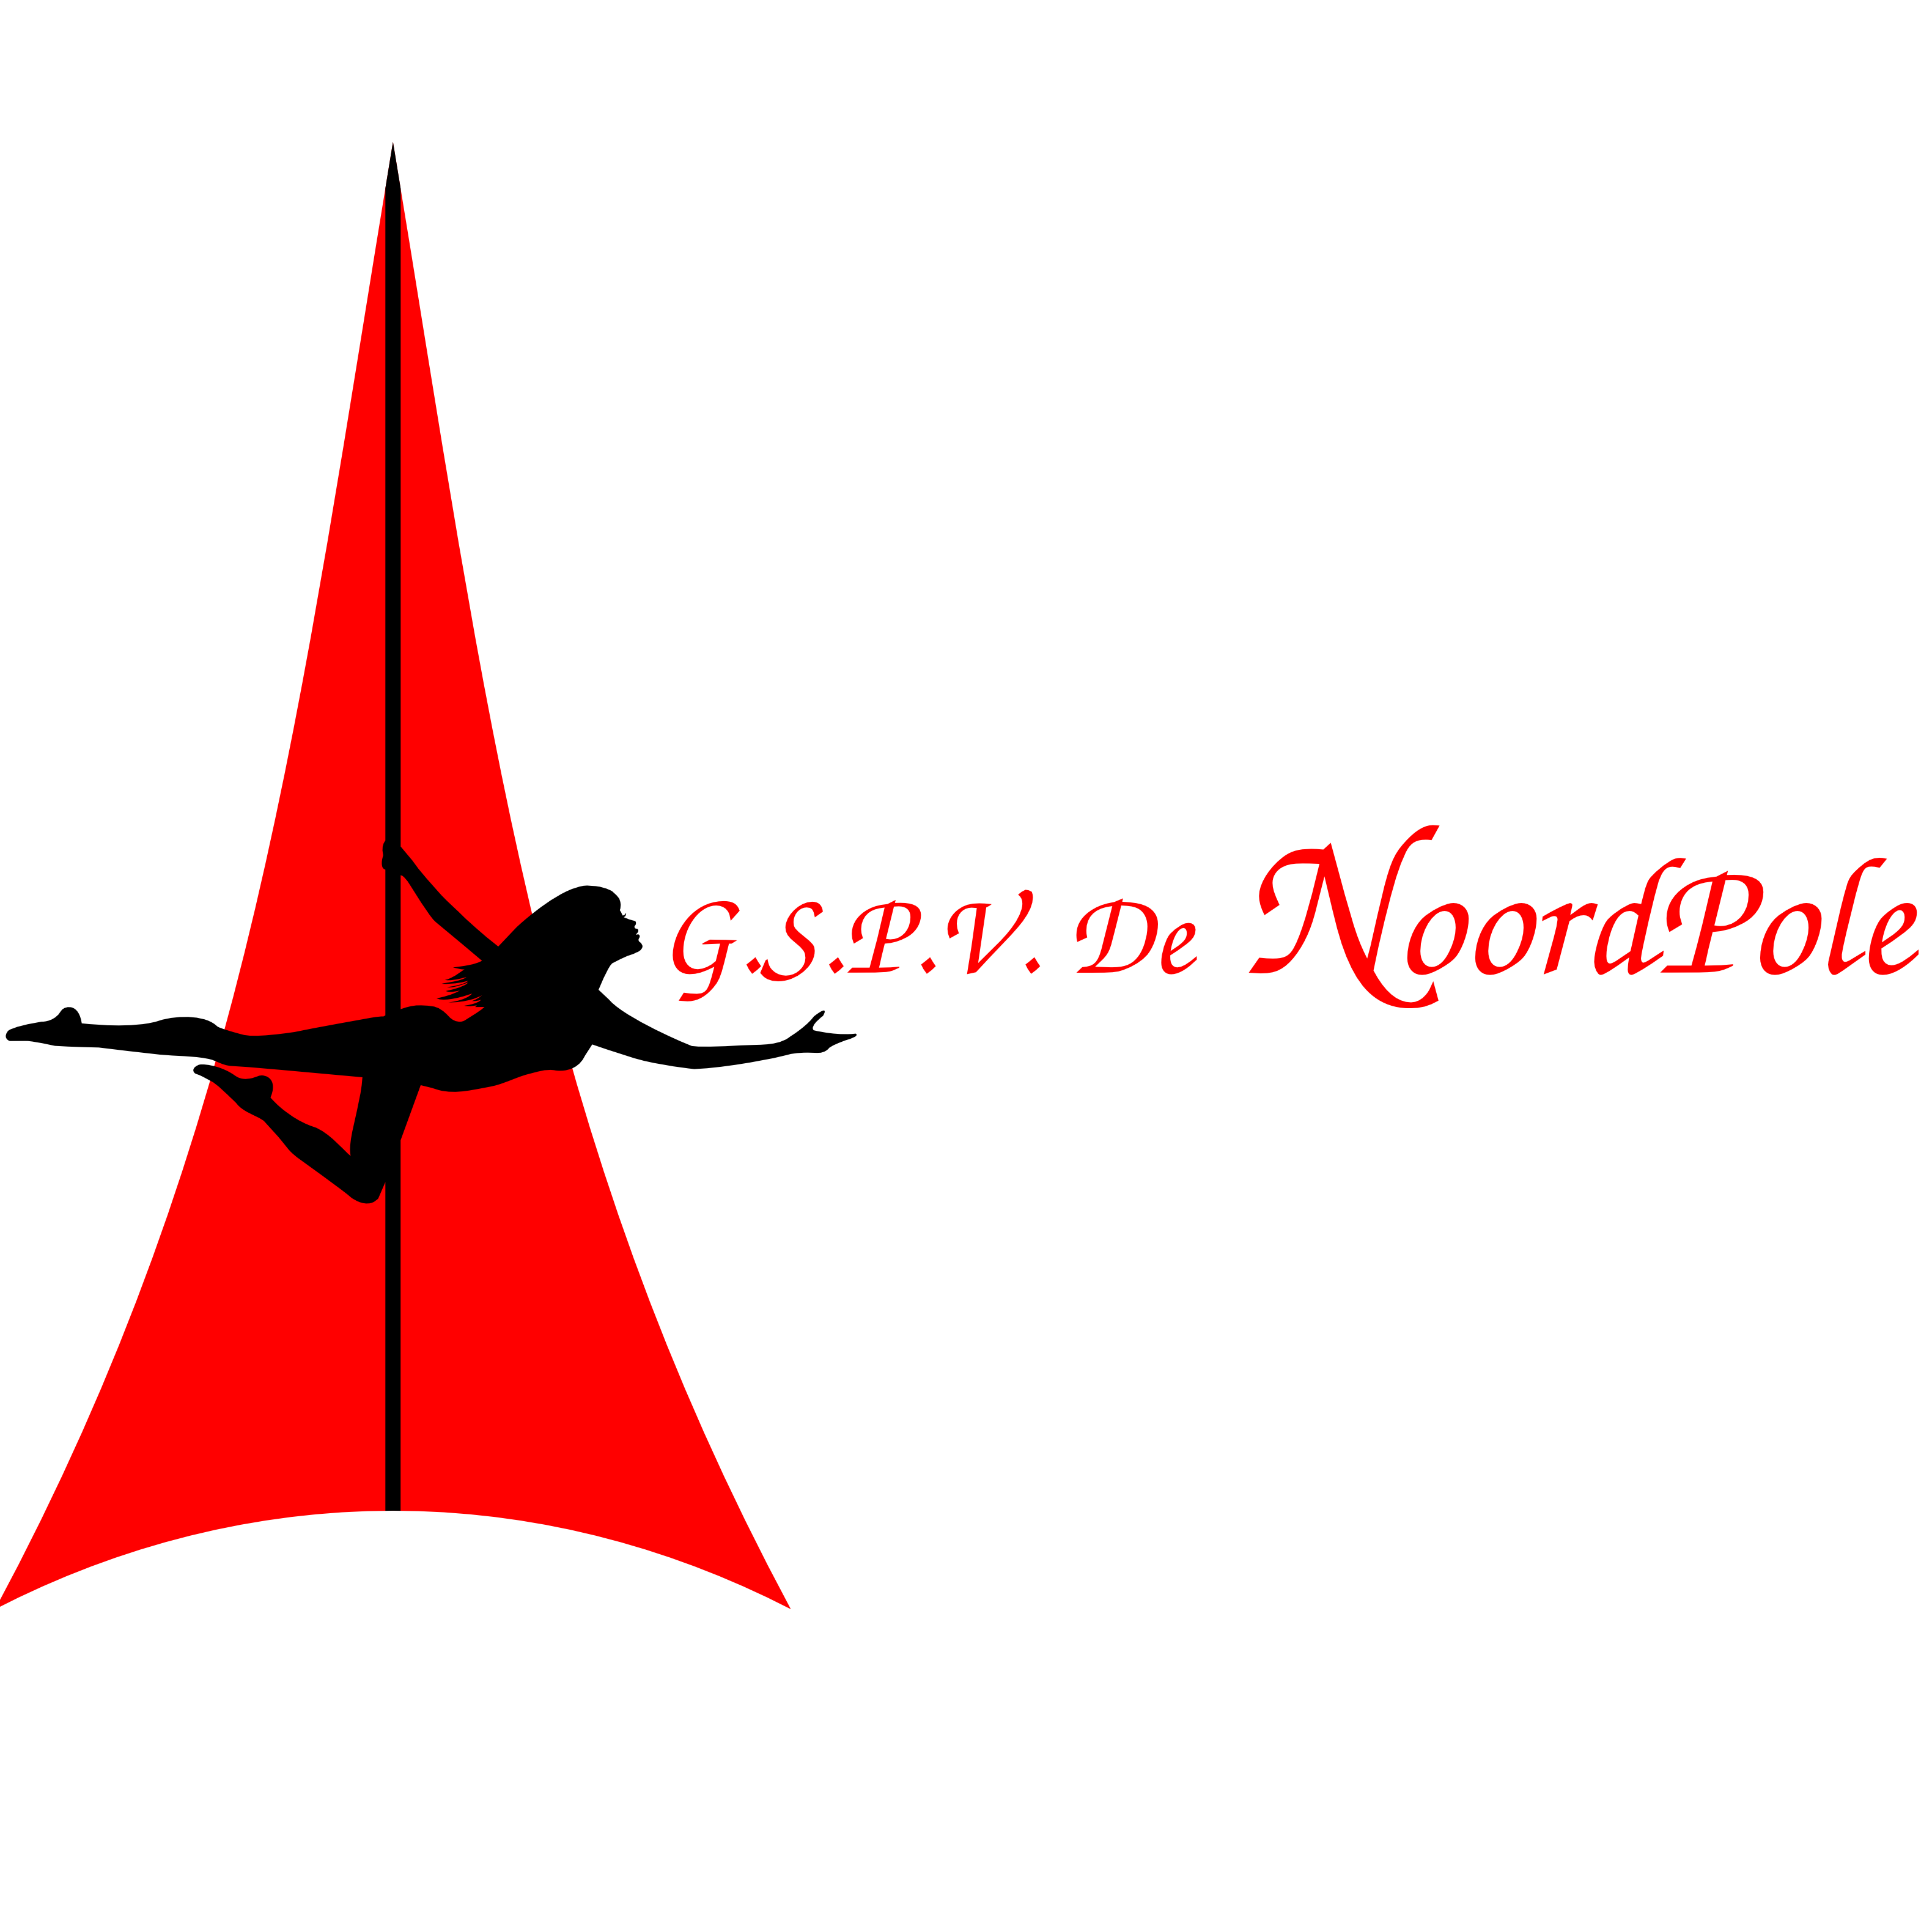 G.S.P.V. De NoordPole logo